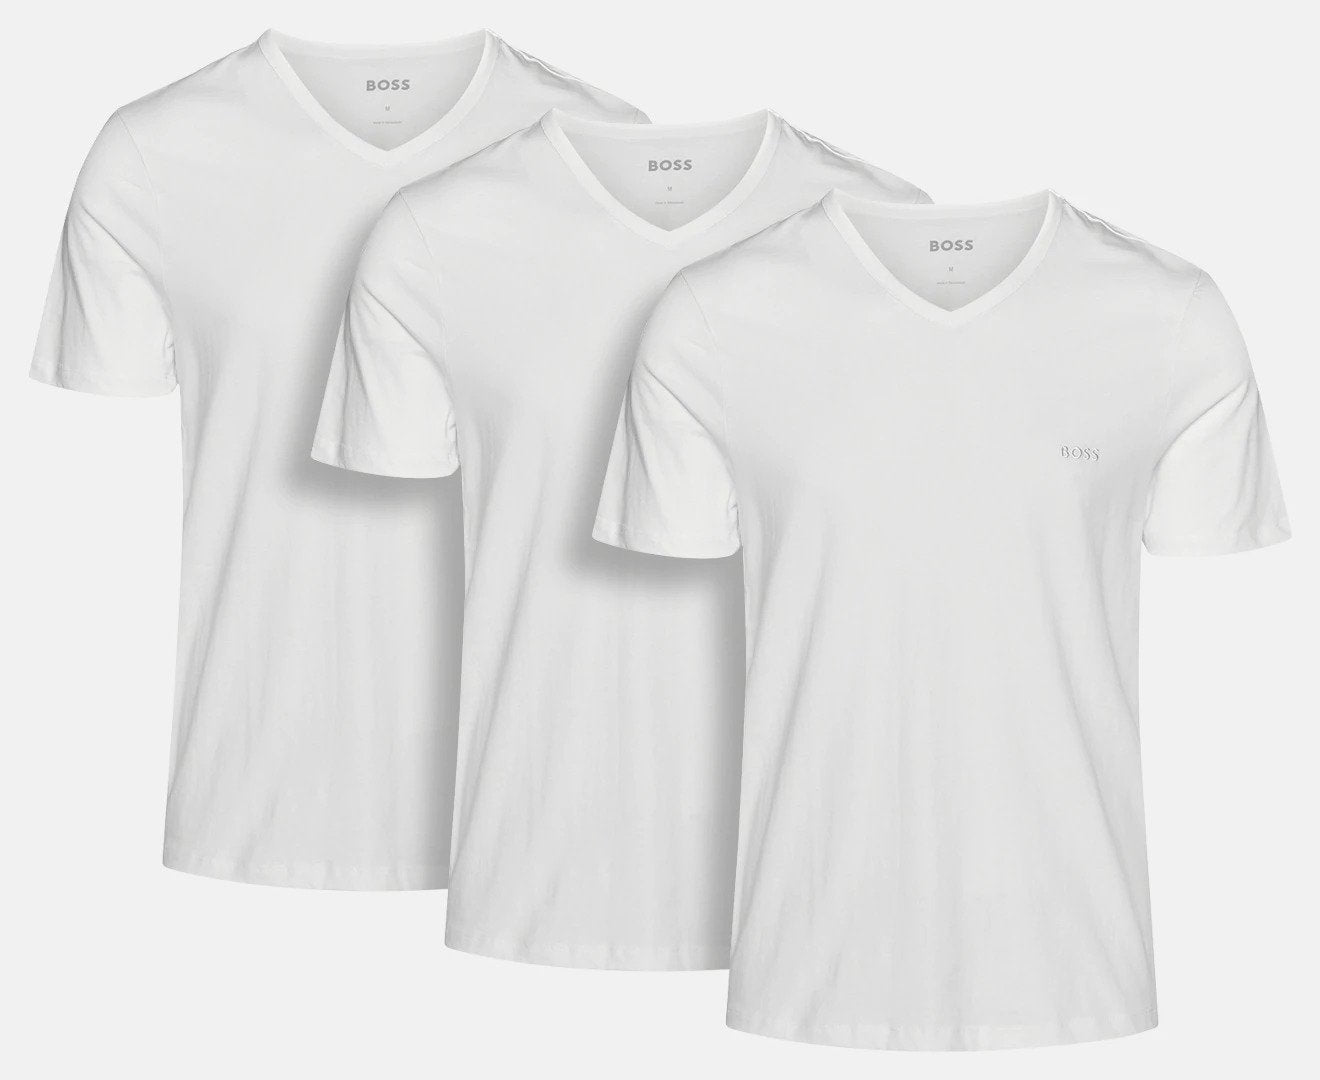 Hugo Boss Men's Classic V-Neck Tee / T-Shirt / Tshirt 3-Pack - White